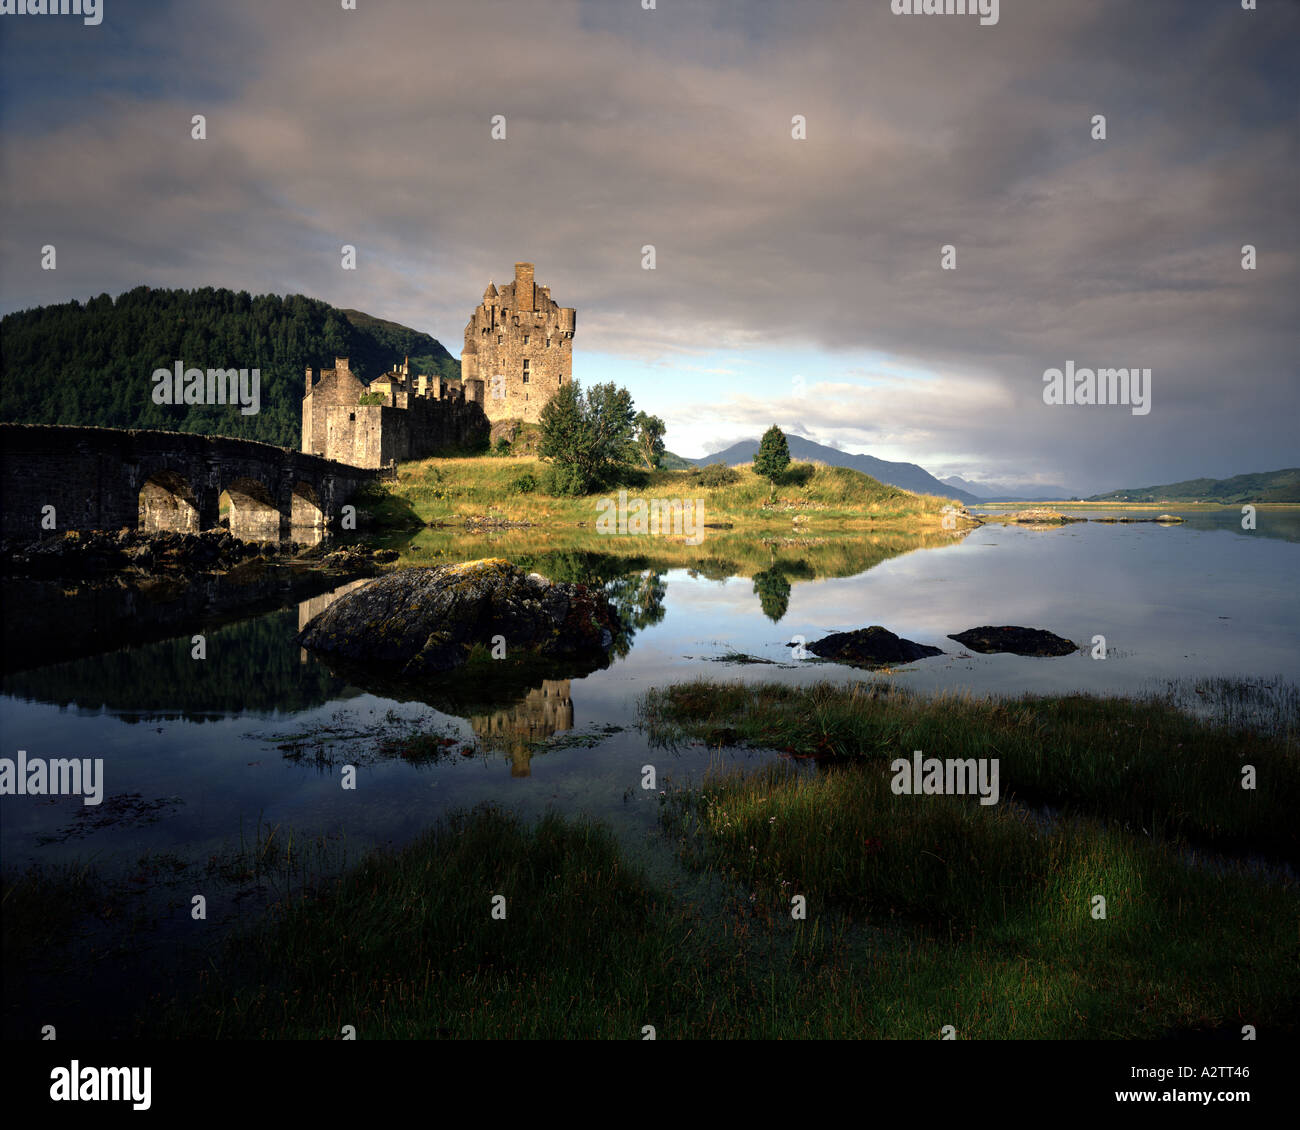 GB - Ecosse : le château d'Eilean Donan et Loch Alsh Banque D'Images